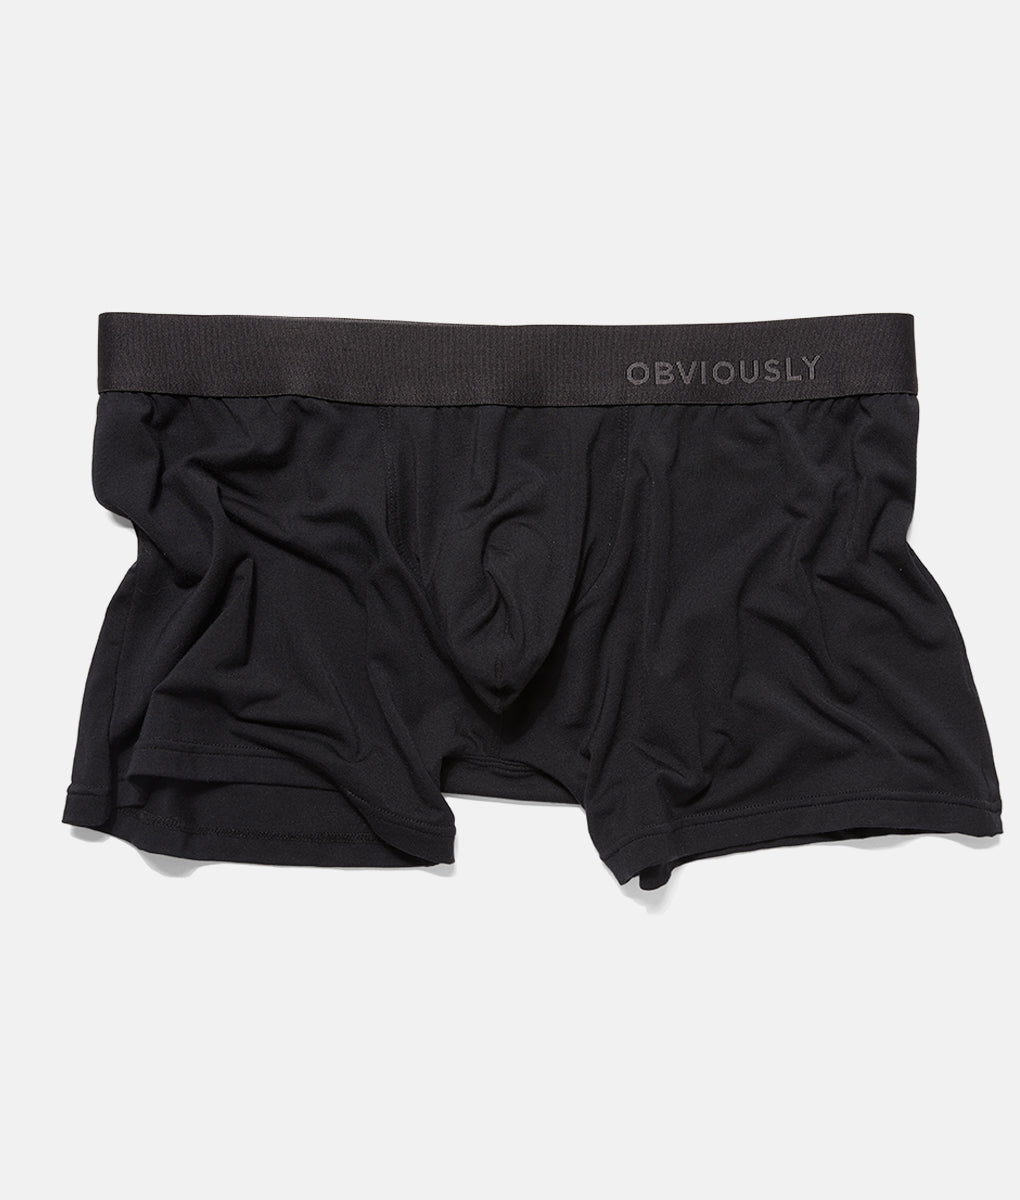 Obviously PrimeMan Black Boxer Brief - Underwear Expert